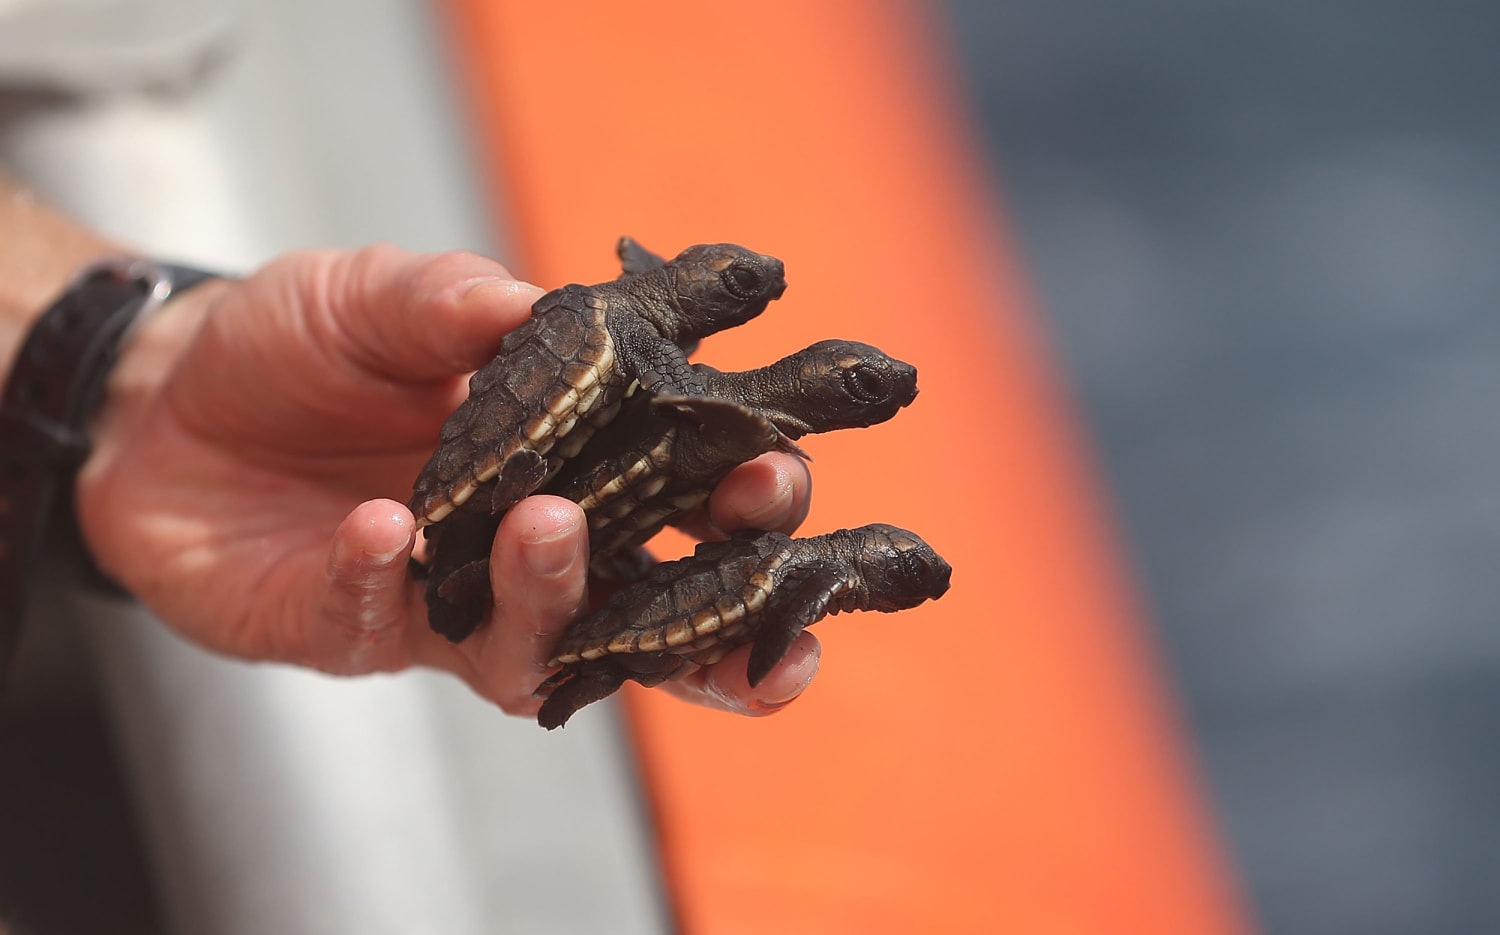 Tiny Baby Turtles Set Free into Vast Ocean